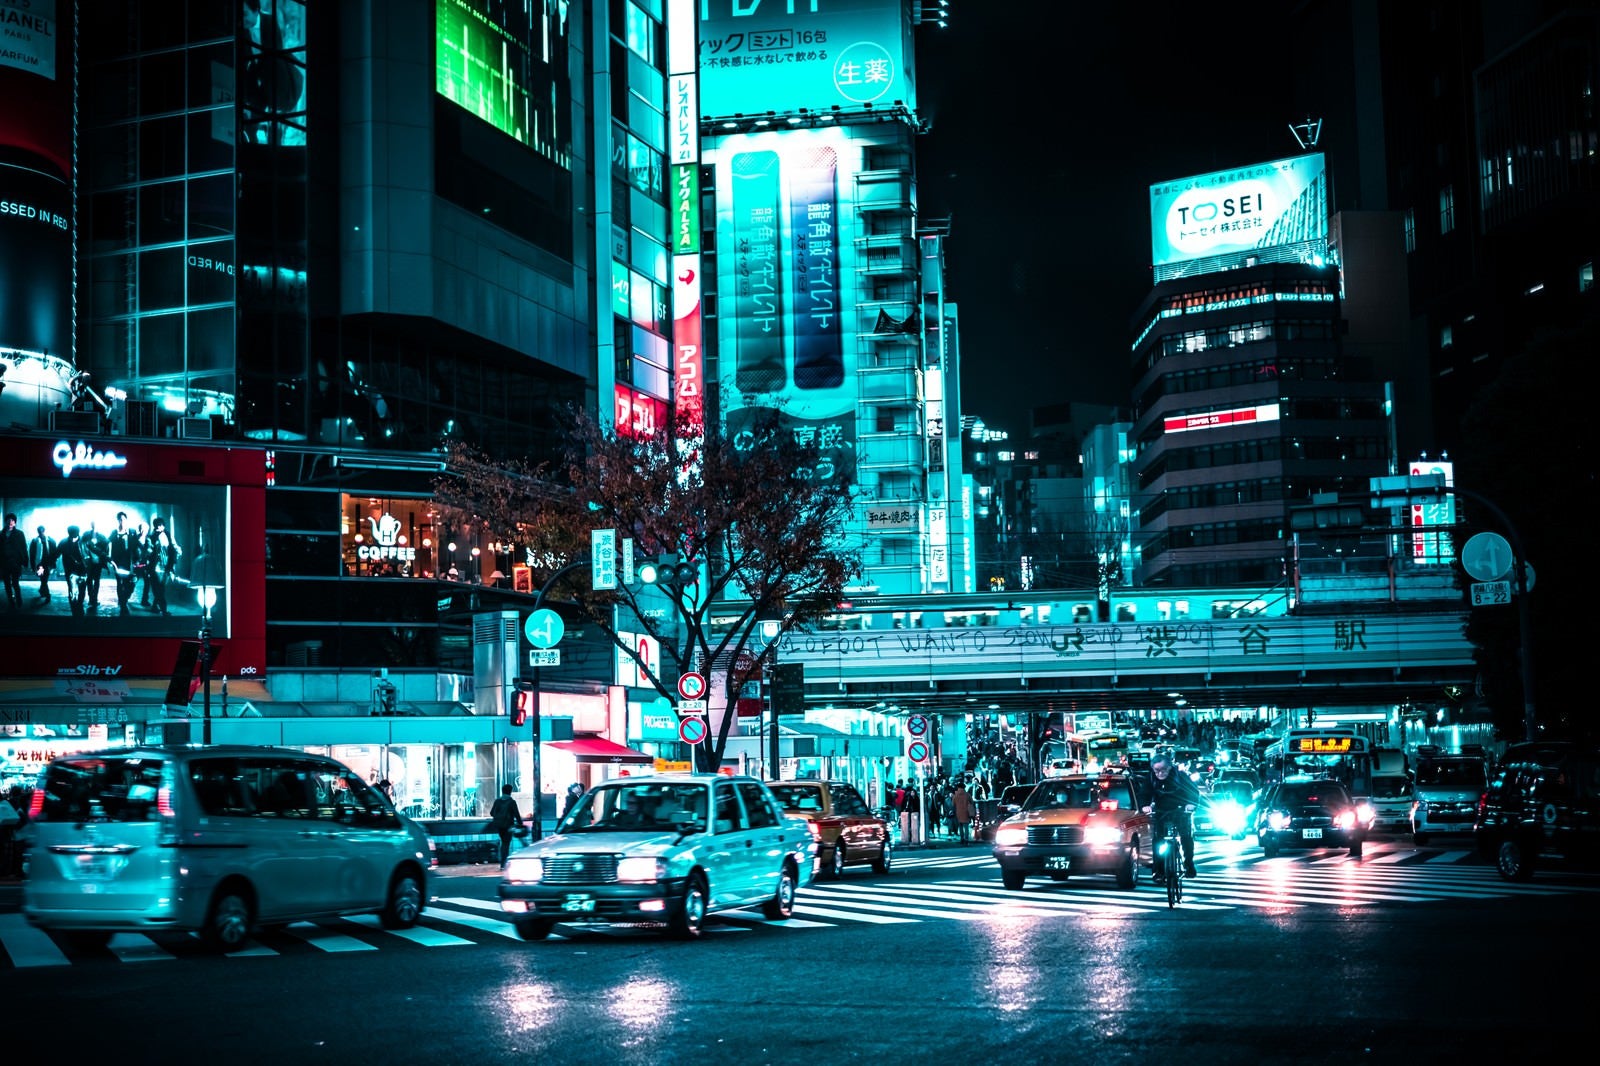 「渋谷駅前の車」の写真